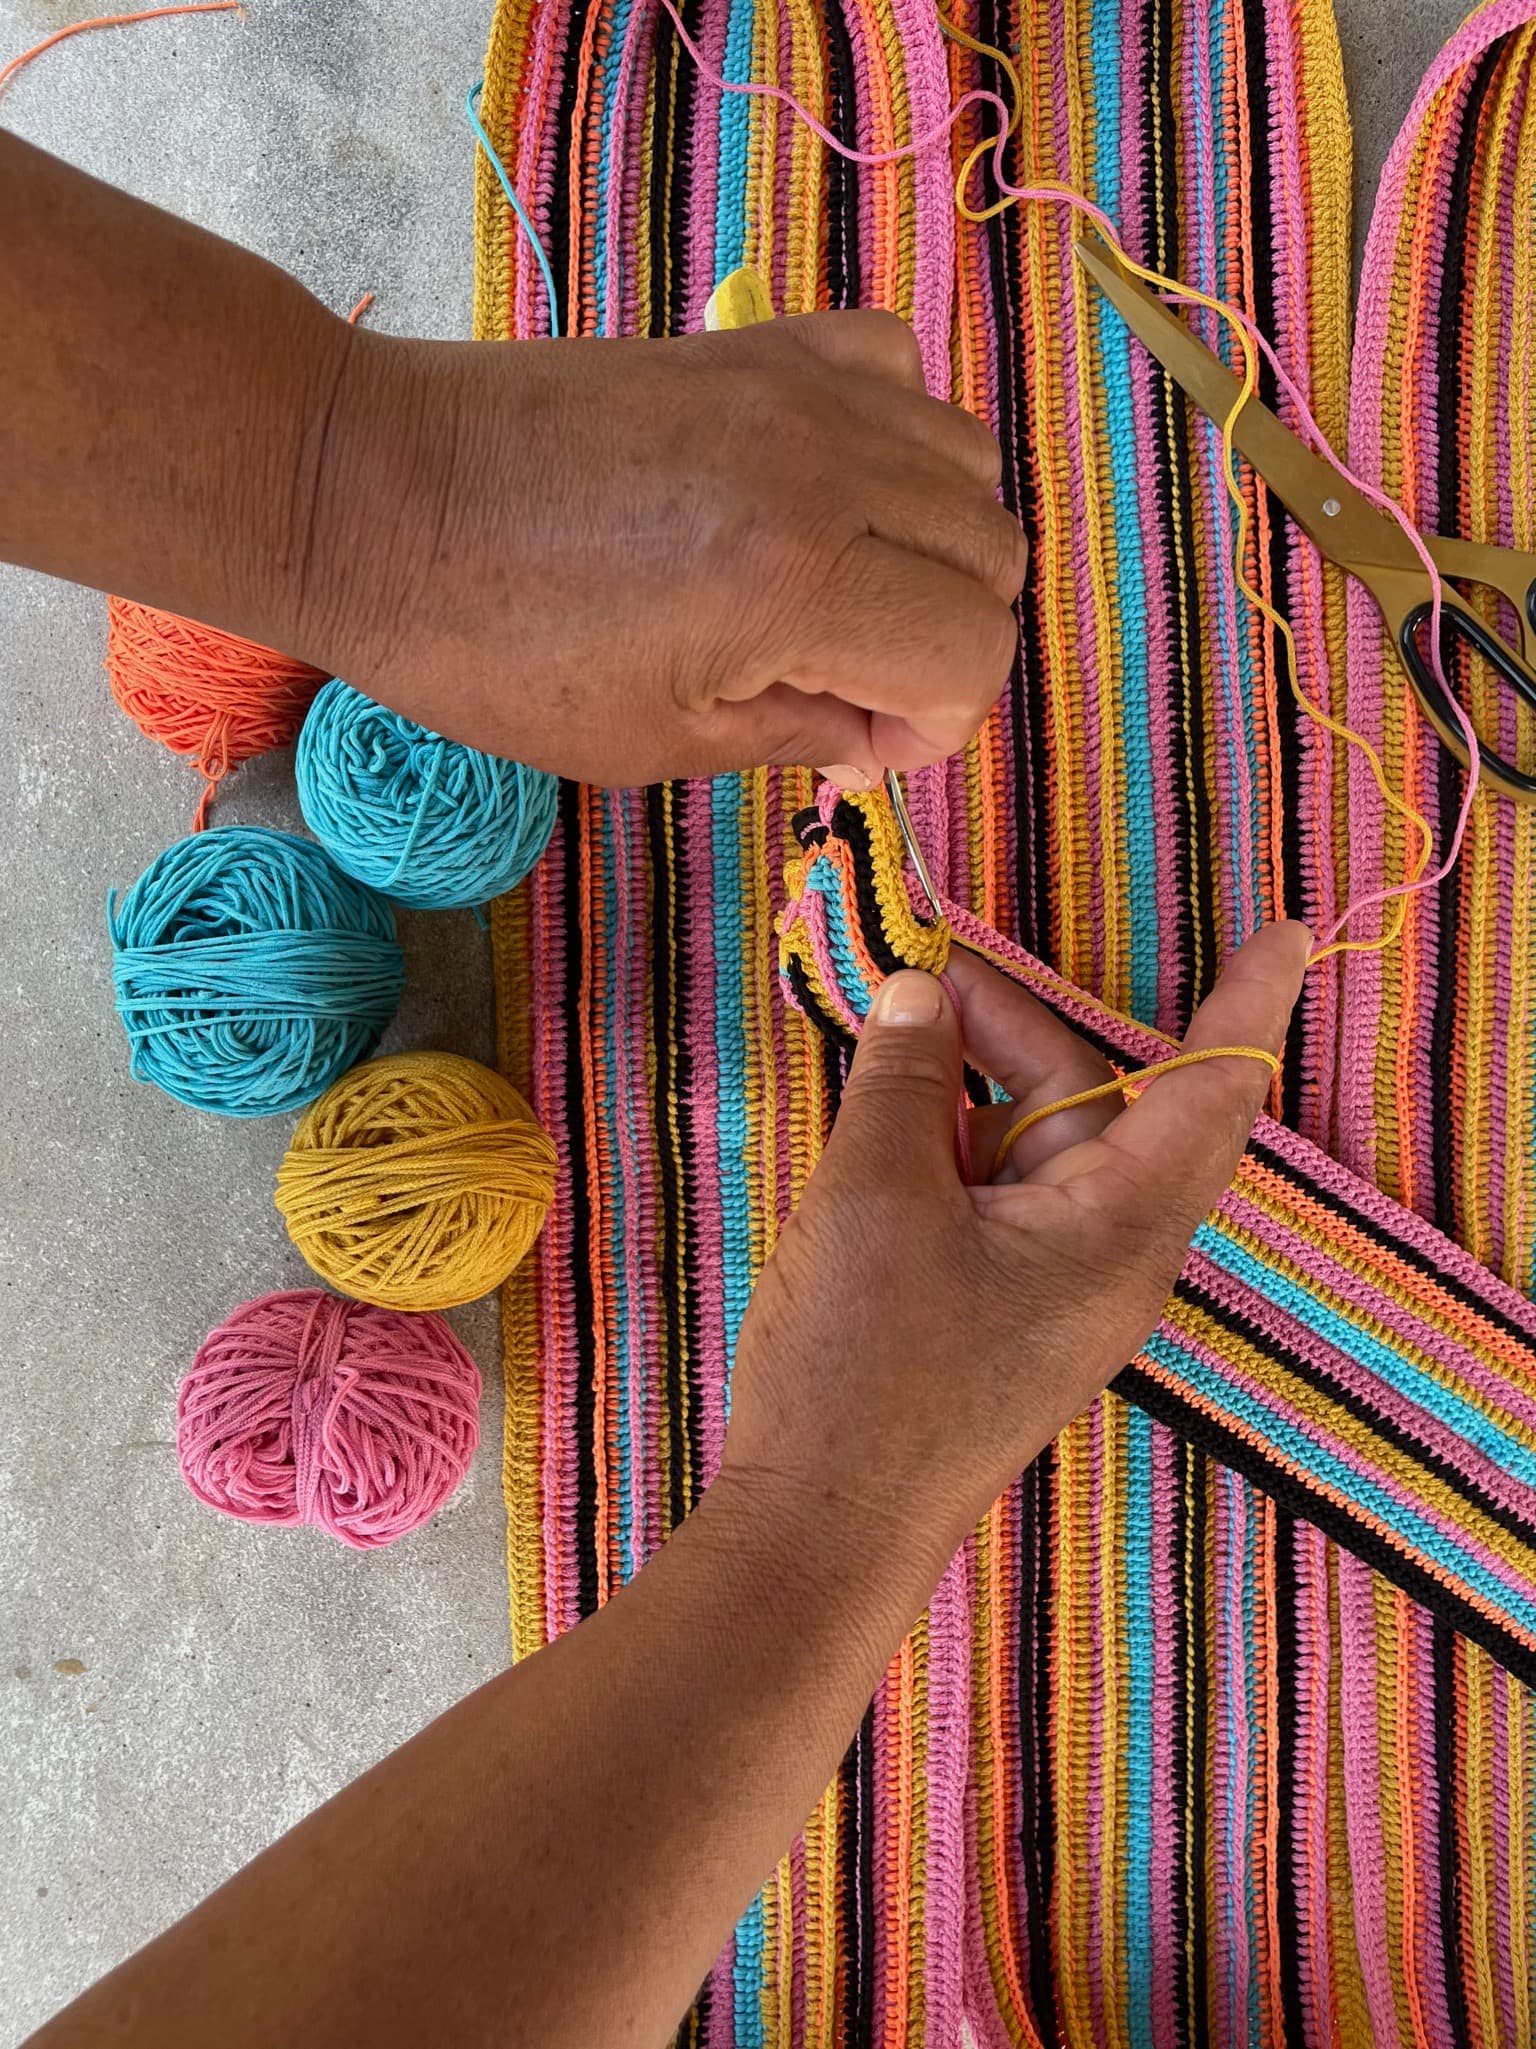 Une image en gros plan de deux mains tissant une longue bande de textile coloré.